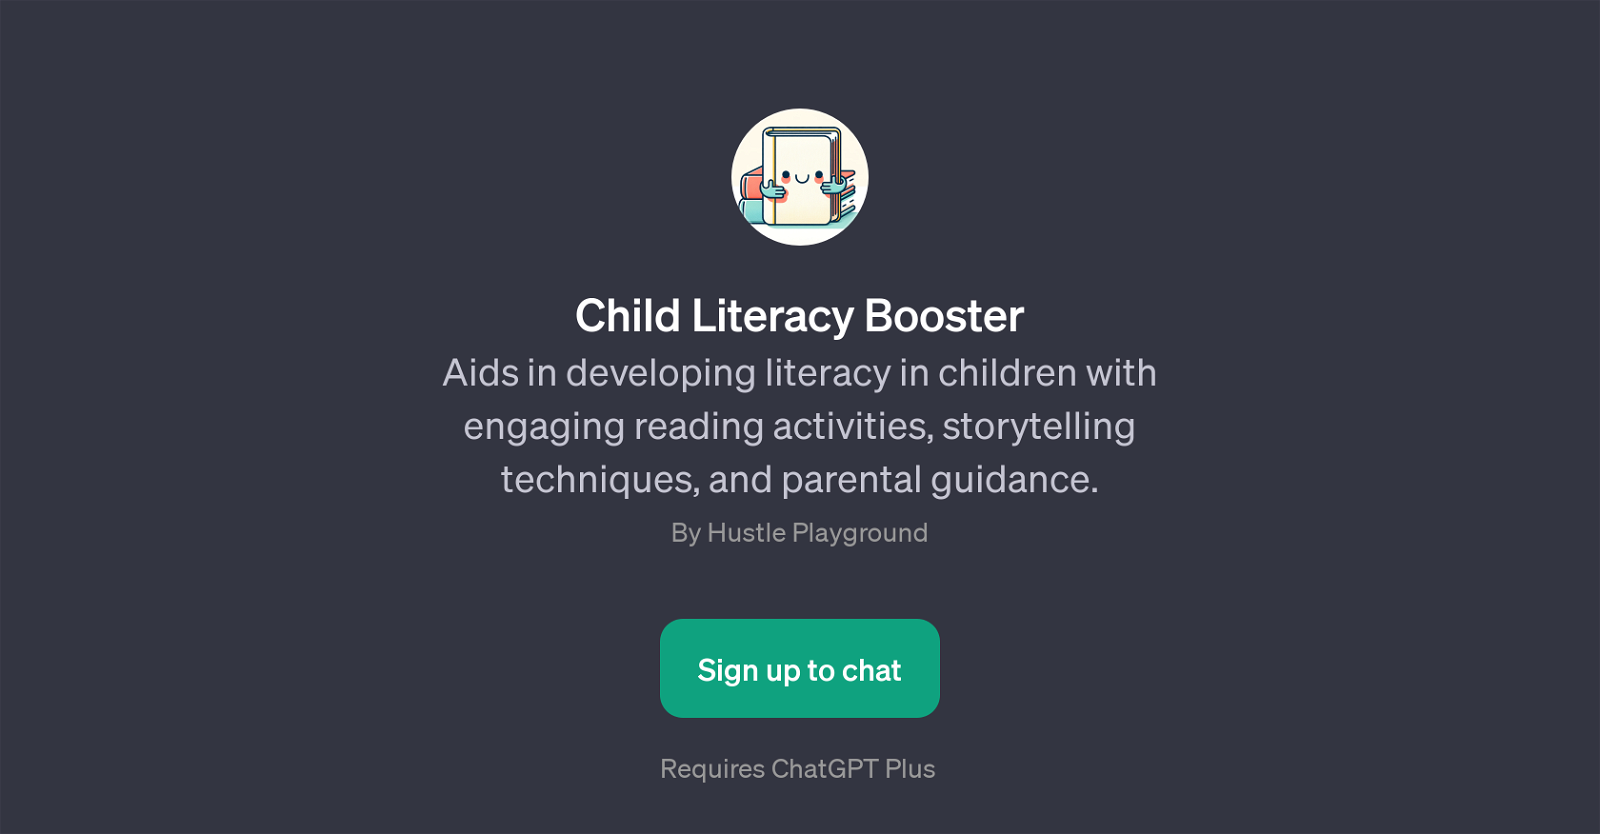 Child Literacy Booster website